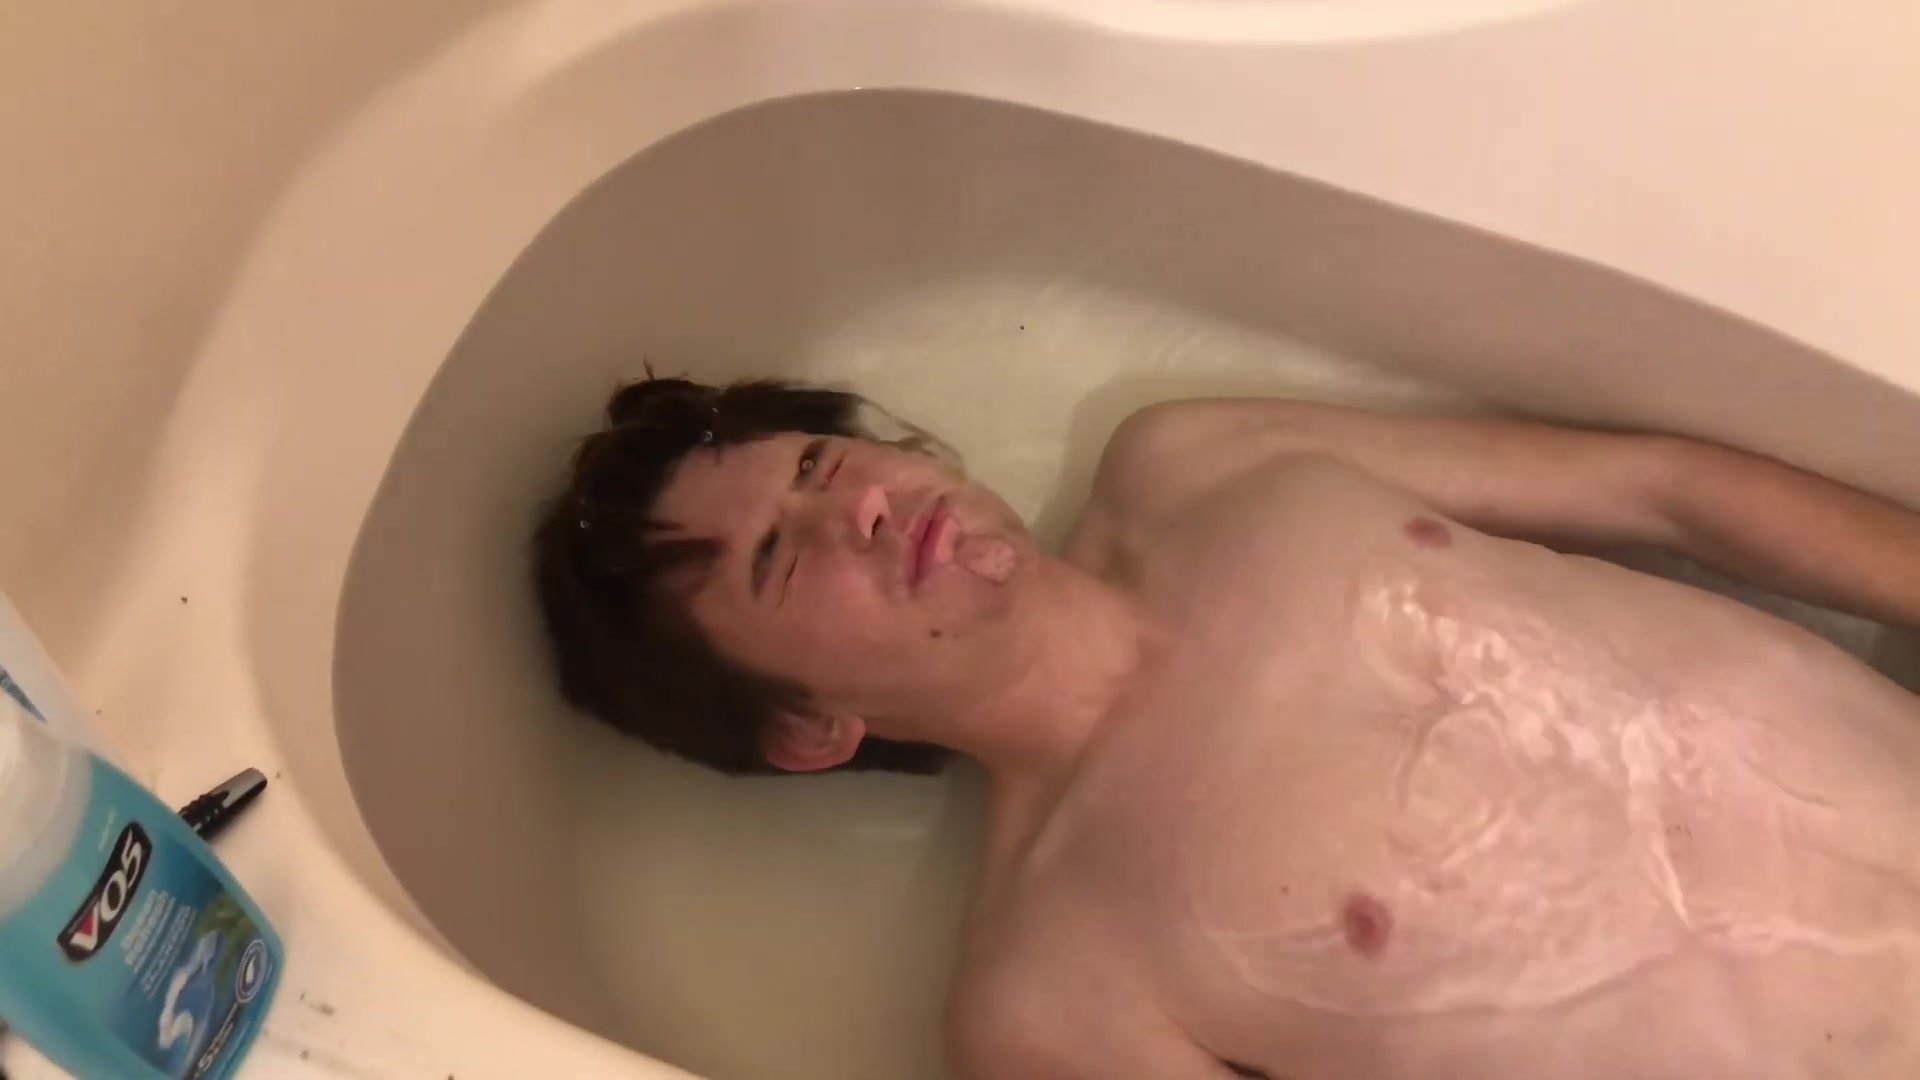 Underwater barefaced bath challenge - video 2